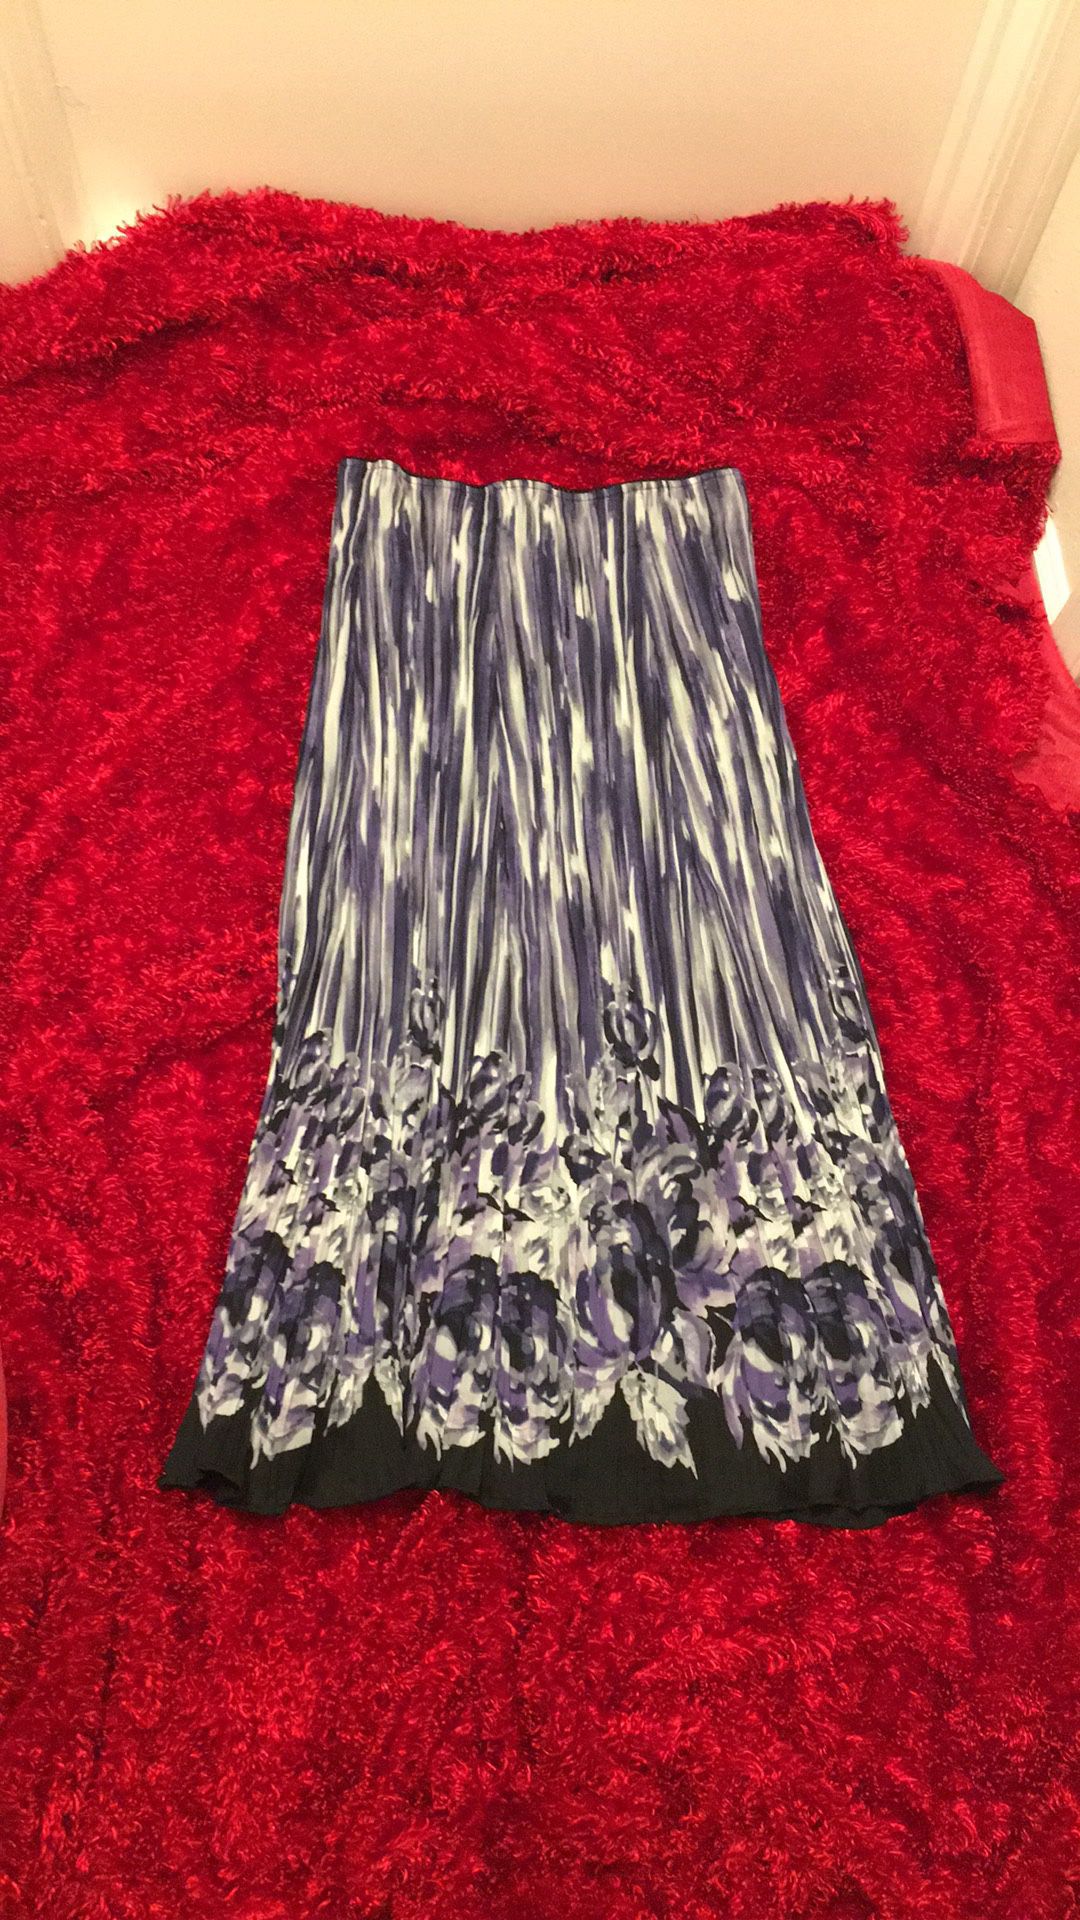 Long skirt size 12